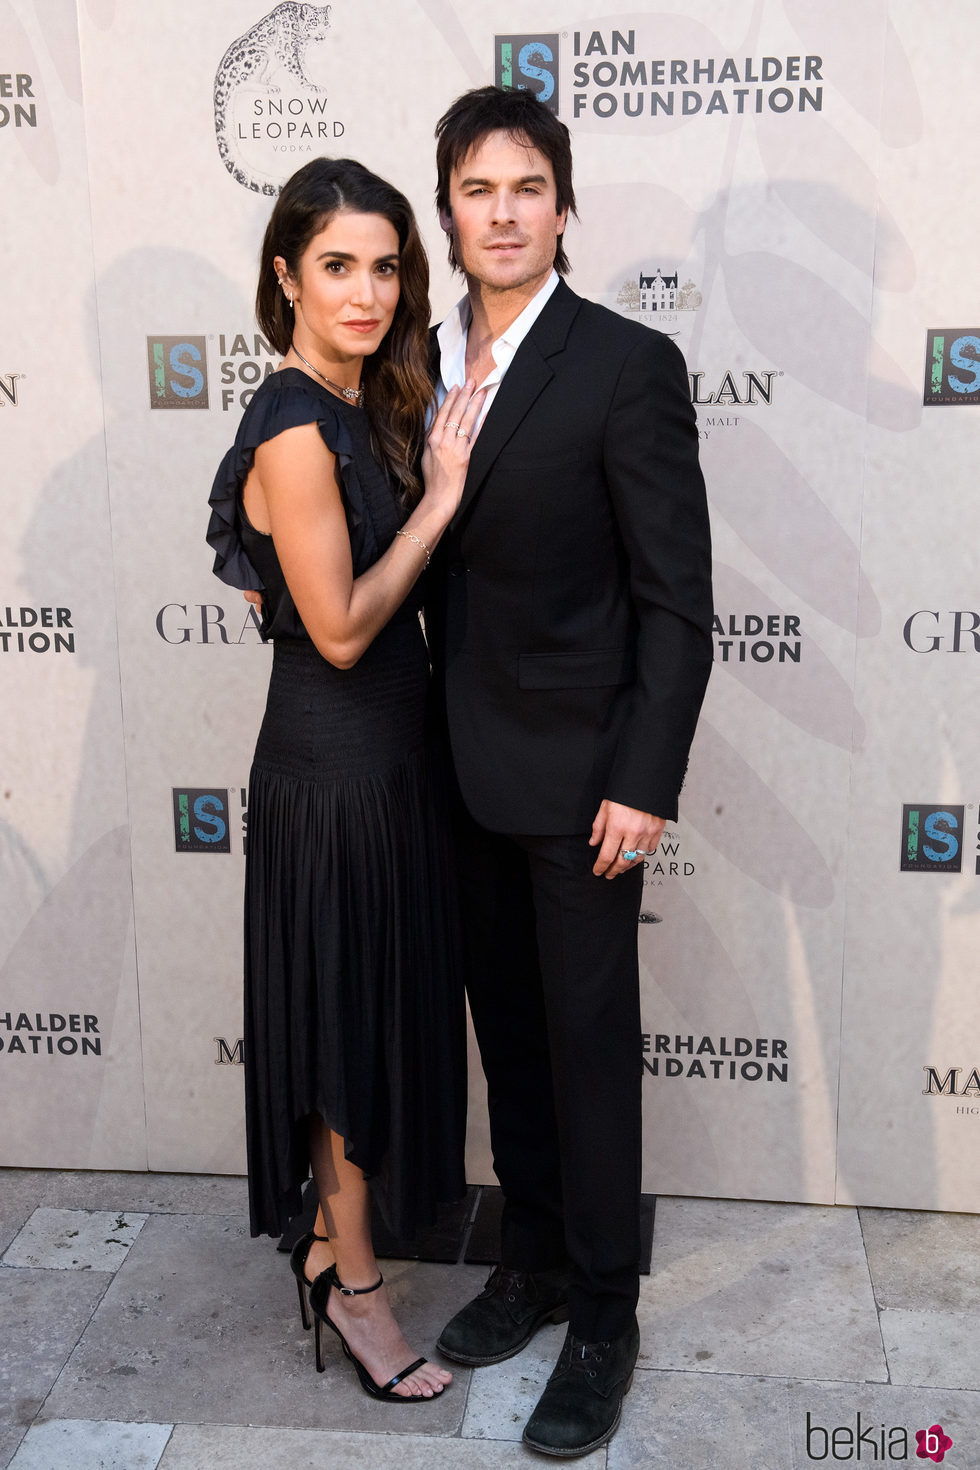 Ian Somerhalder y Nikki Reed en la gala de la fundación del actor